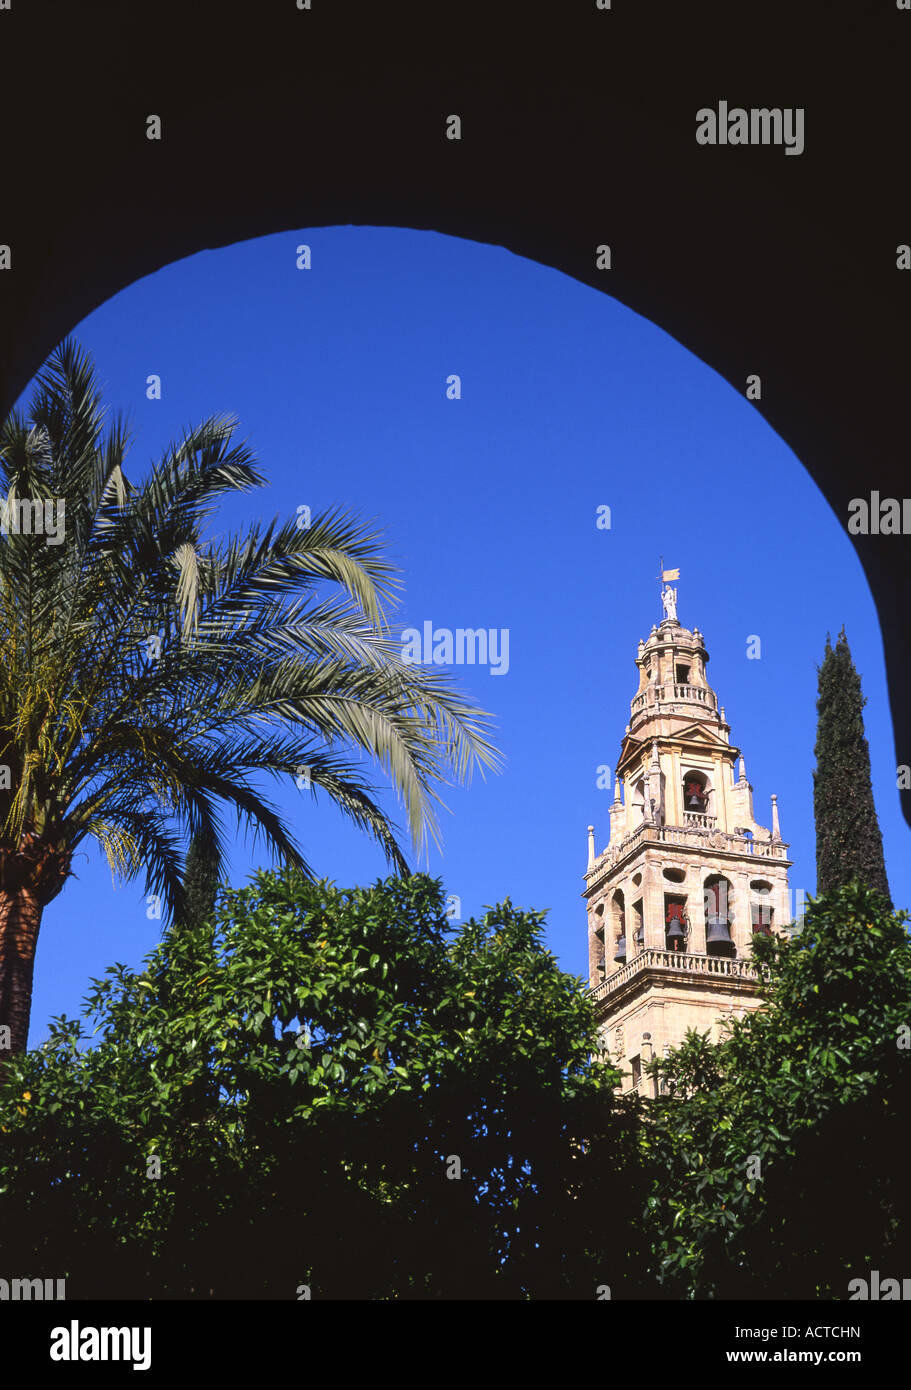 Glockenturm der Kathedrale Mezquita große Moschee und Palmen Baum umrahmt von Bogen Cordoba Andalusien Spanien Stockfoto